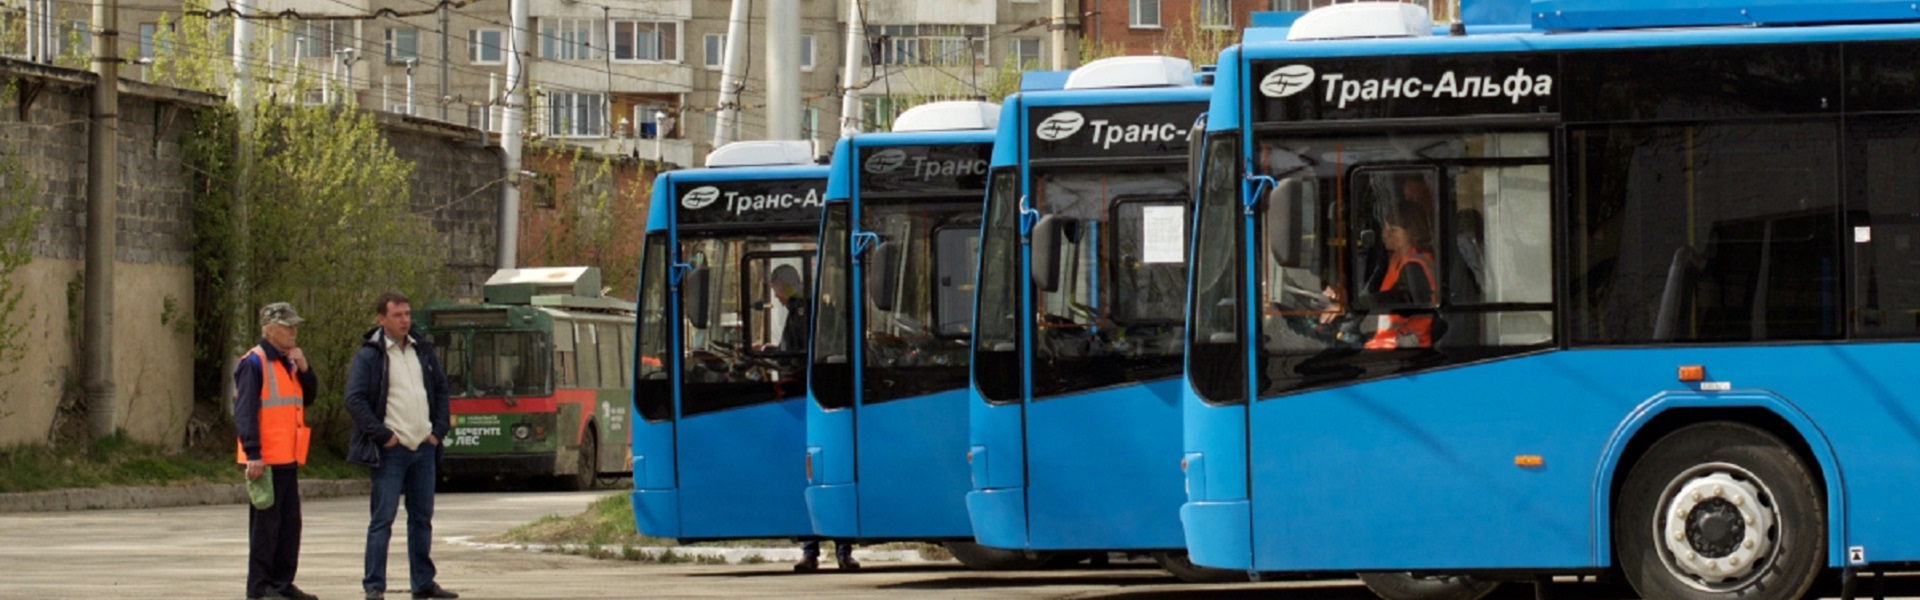 Комфортные и экономичные: в Иркутск прибыли новые троллейбусы